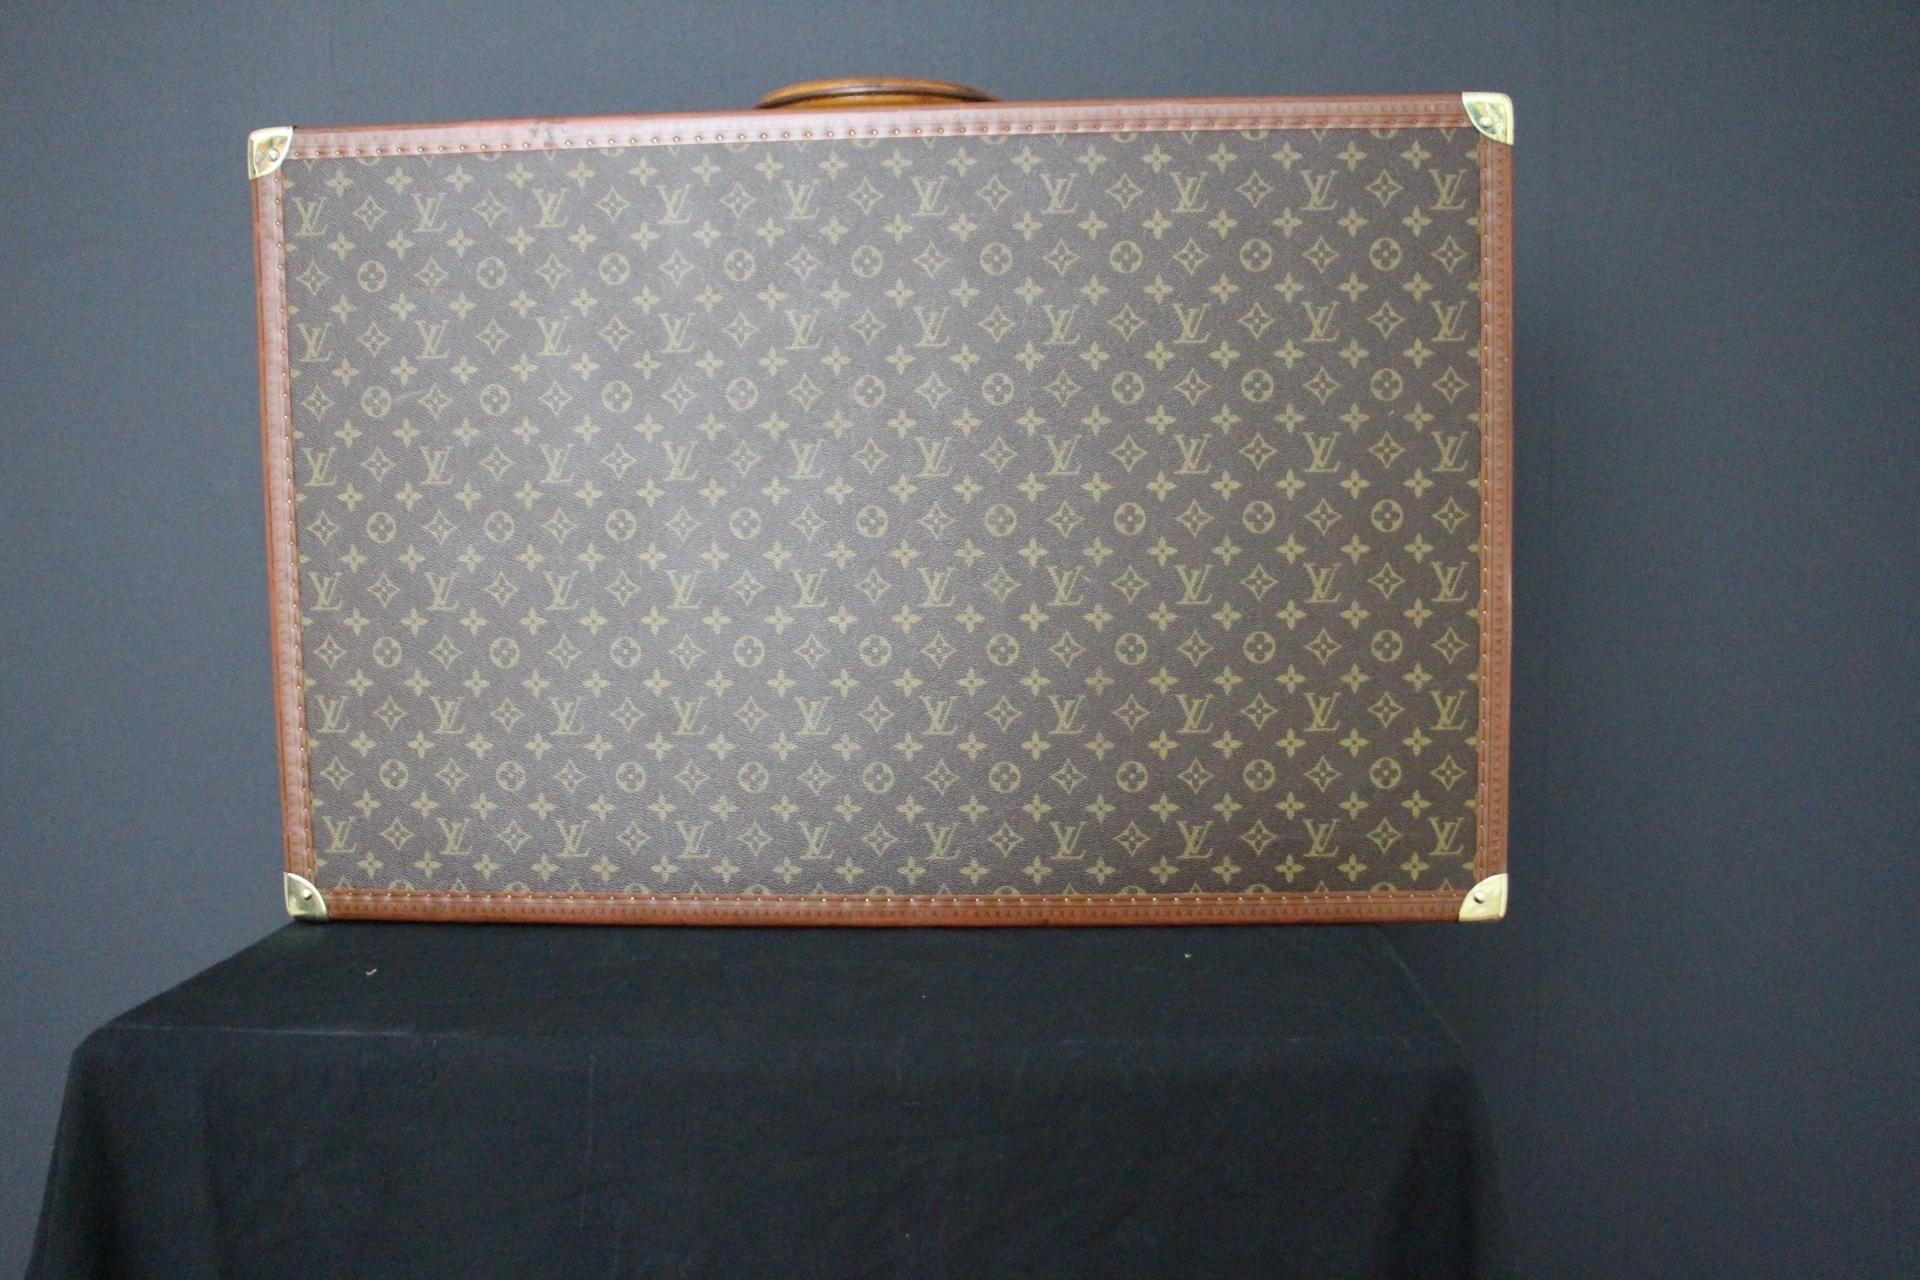  Louis Vuitton Suitcase 80 cm,  80 cm Louis Vuitton Trunk For Sale 4